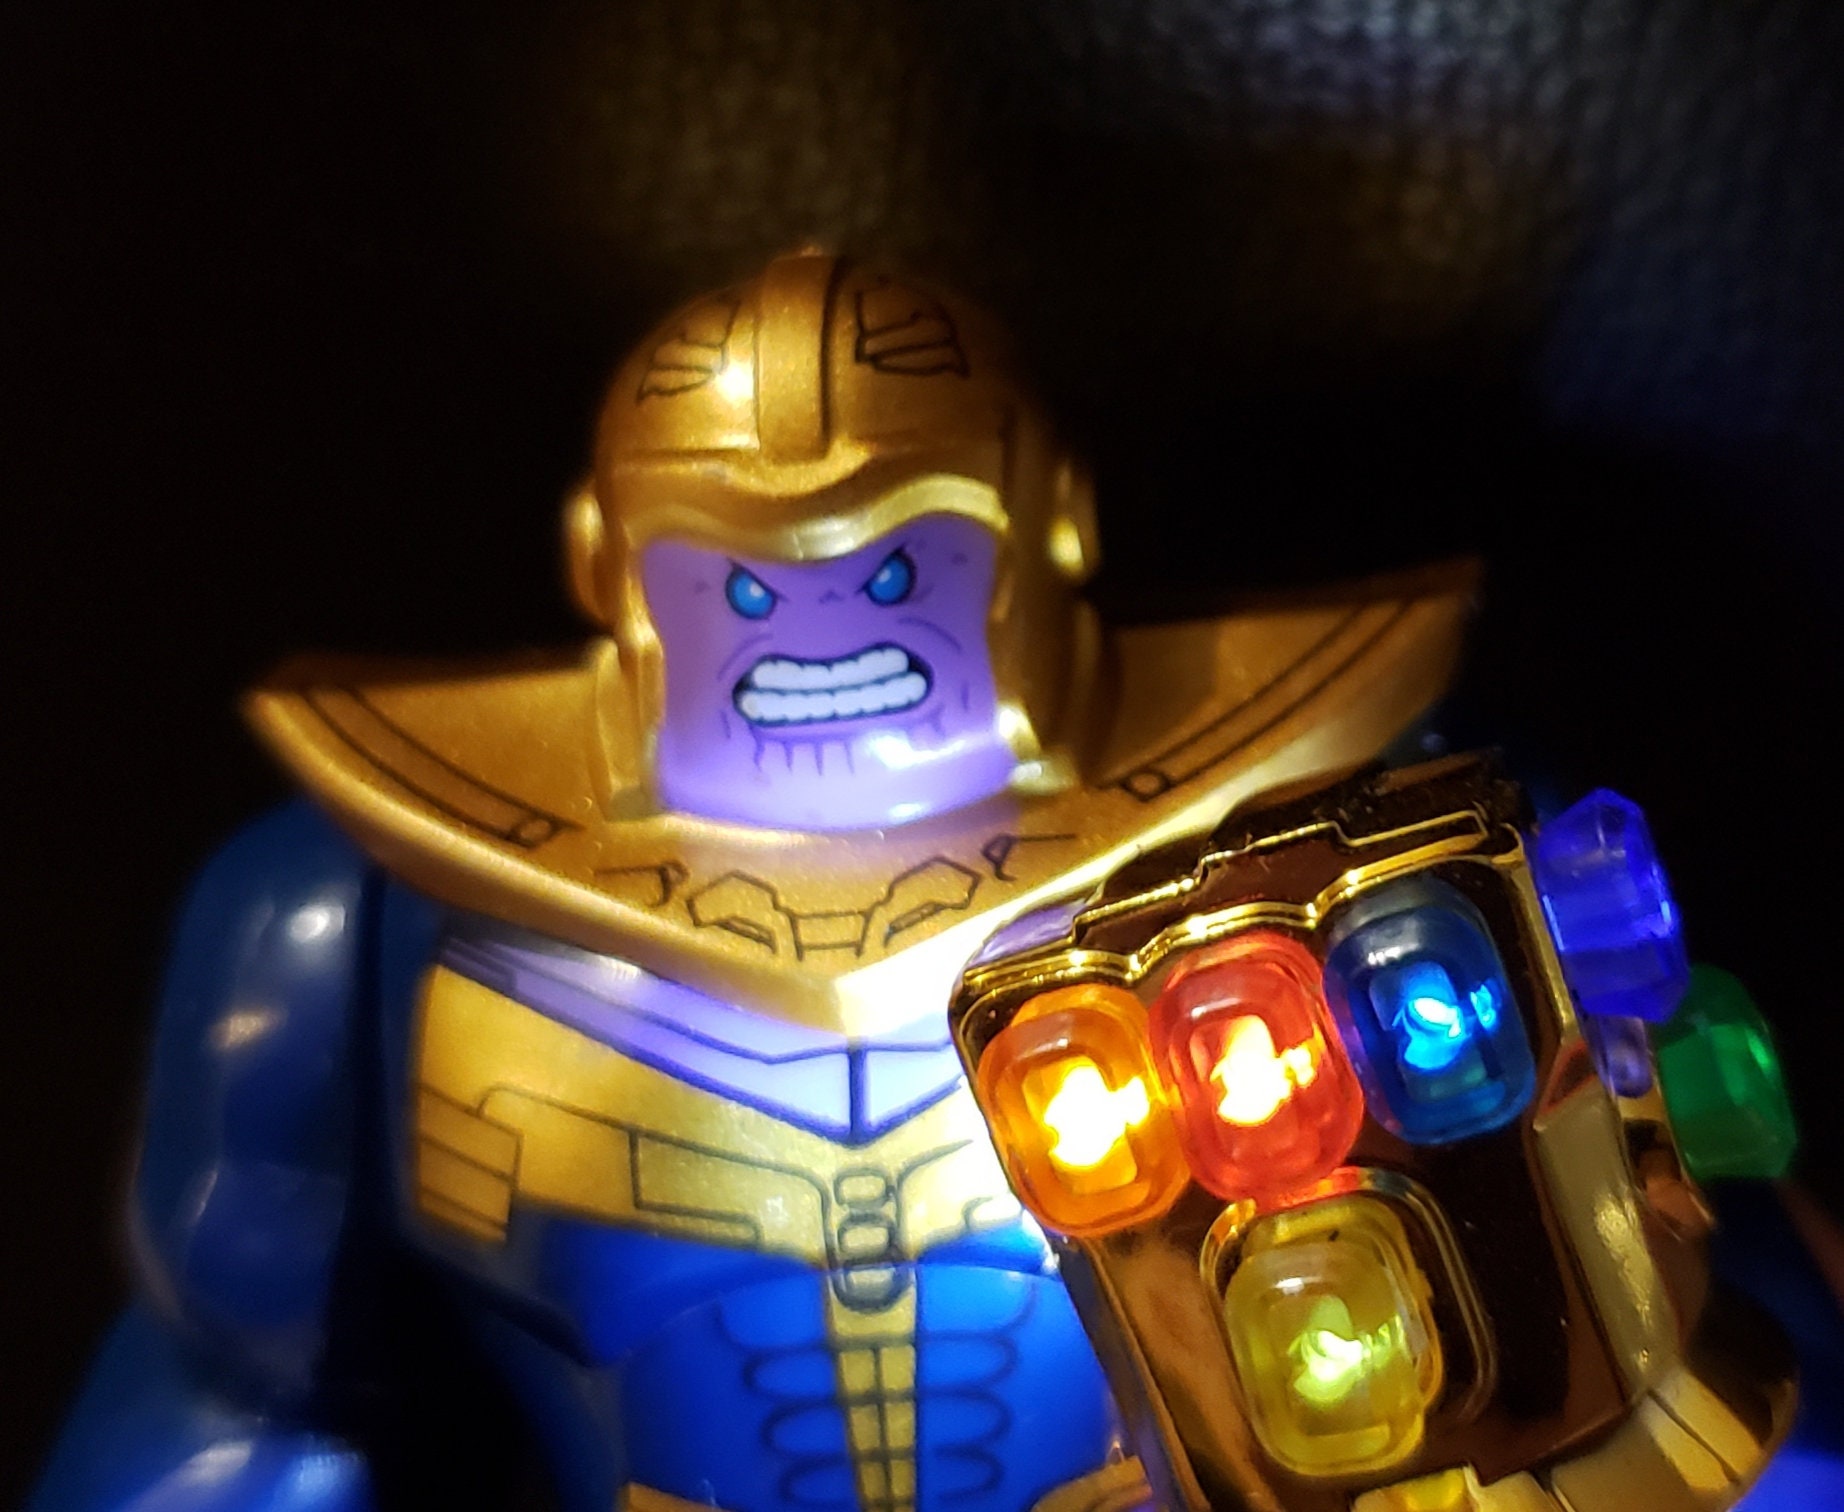 Infinity Gauntlet 24 Stones Avengers End Game Marvel UK Seller CHEAP BRICKS NEW 